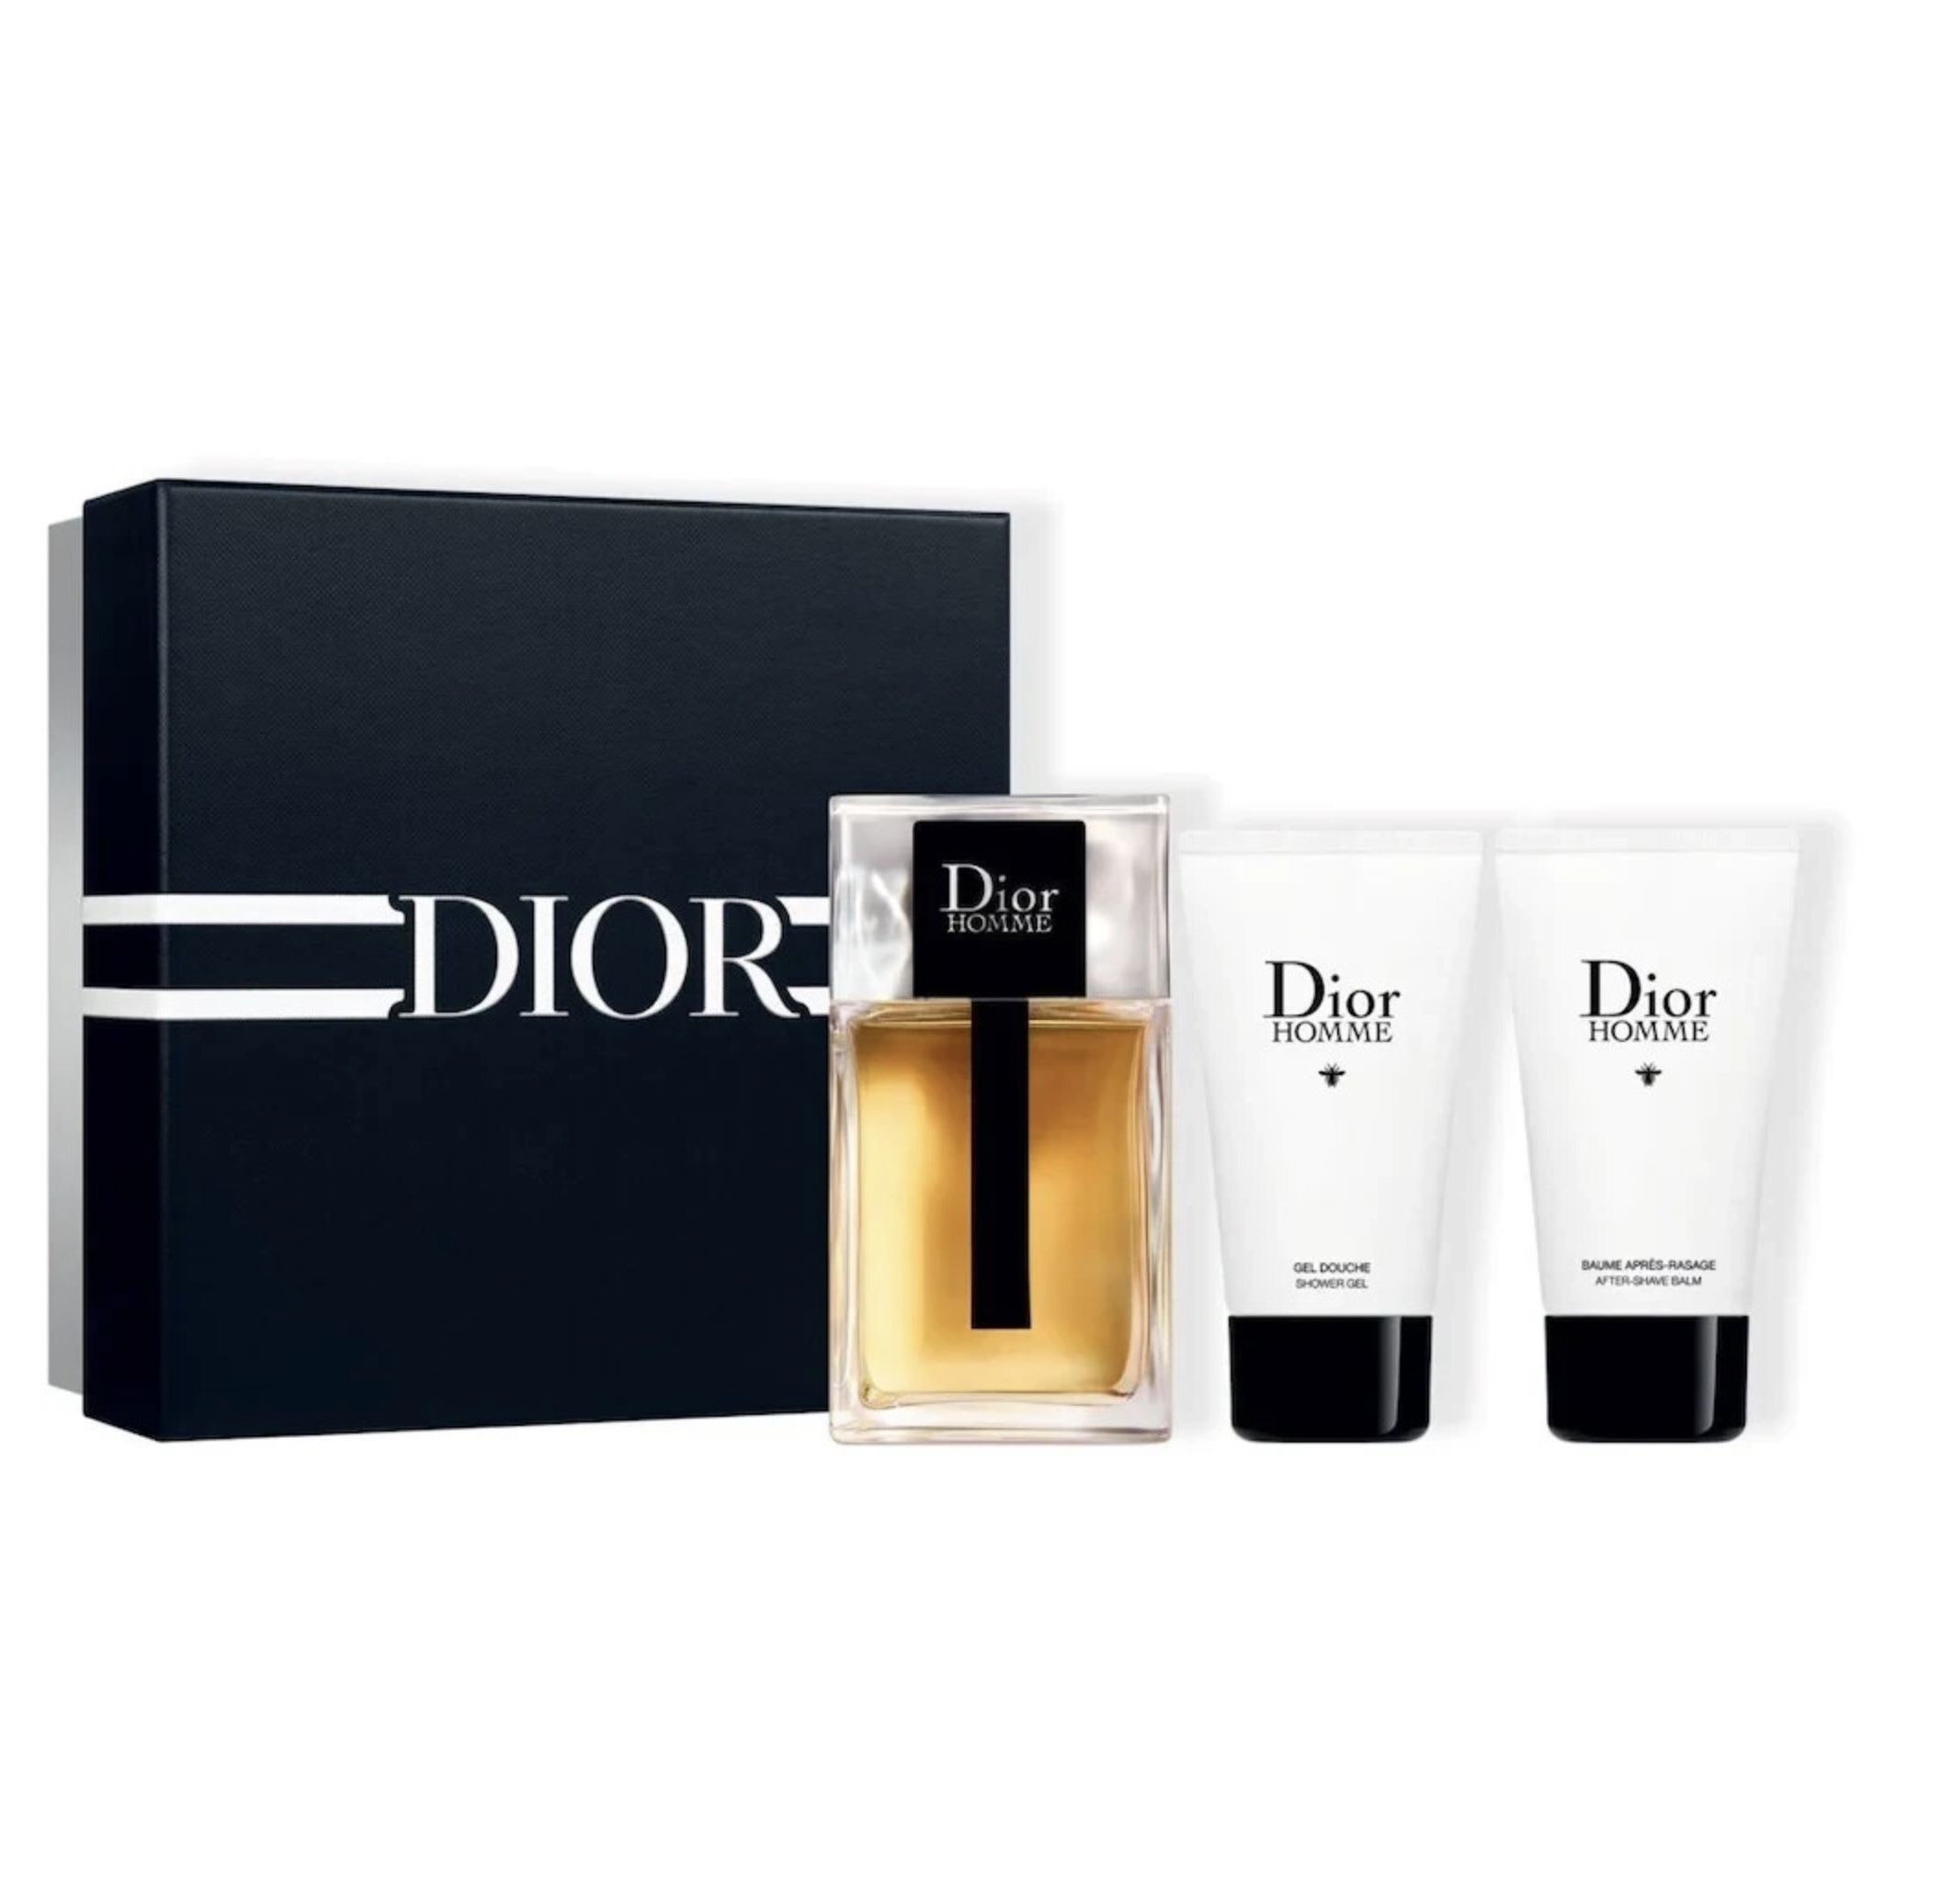 Dior Homme Duftset (100ml EdT + After Shave + Duschgel) für 62€ (statt 101€)